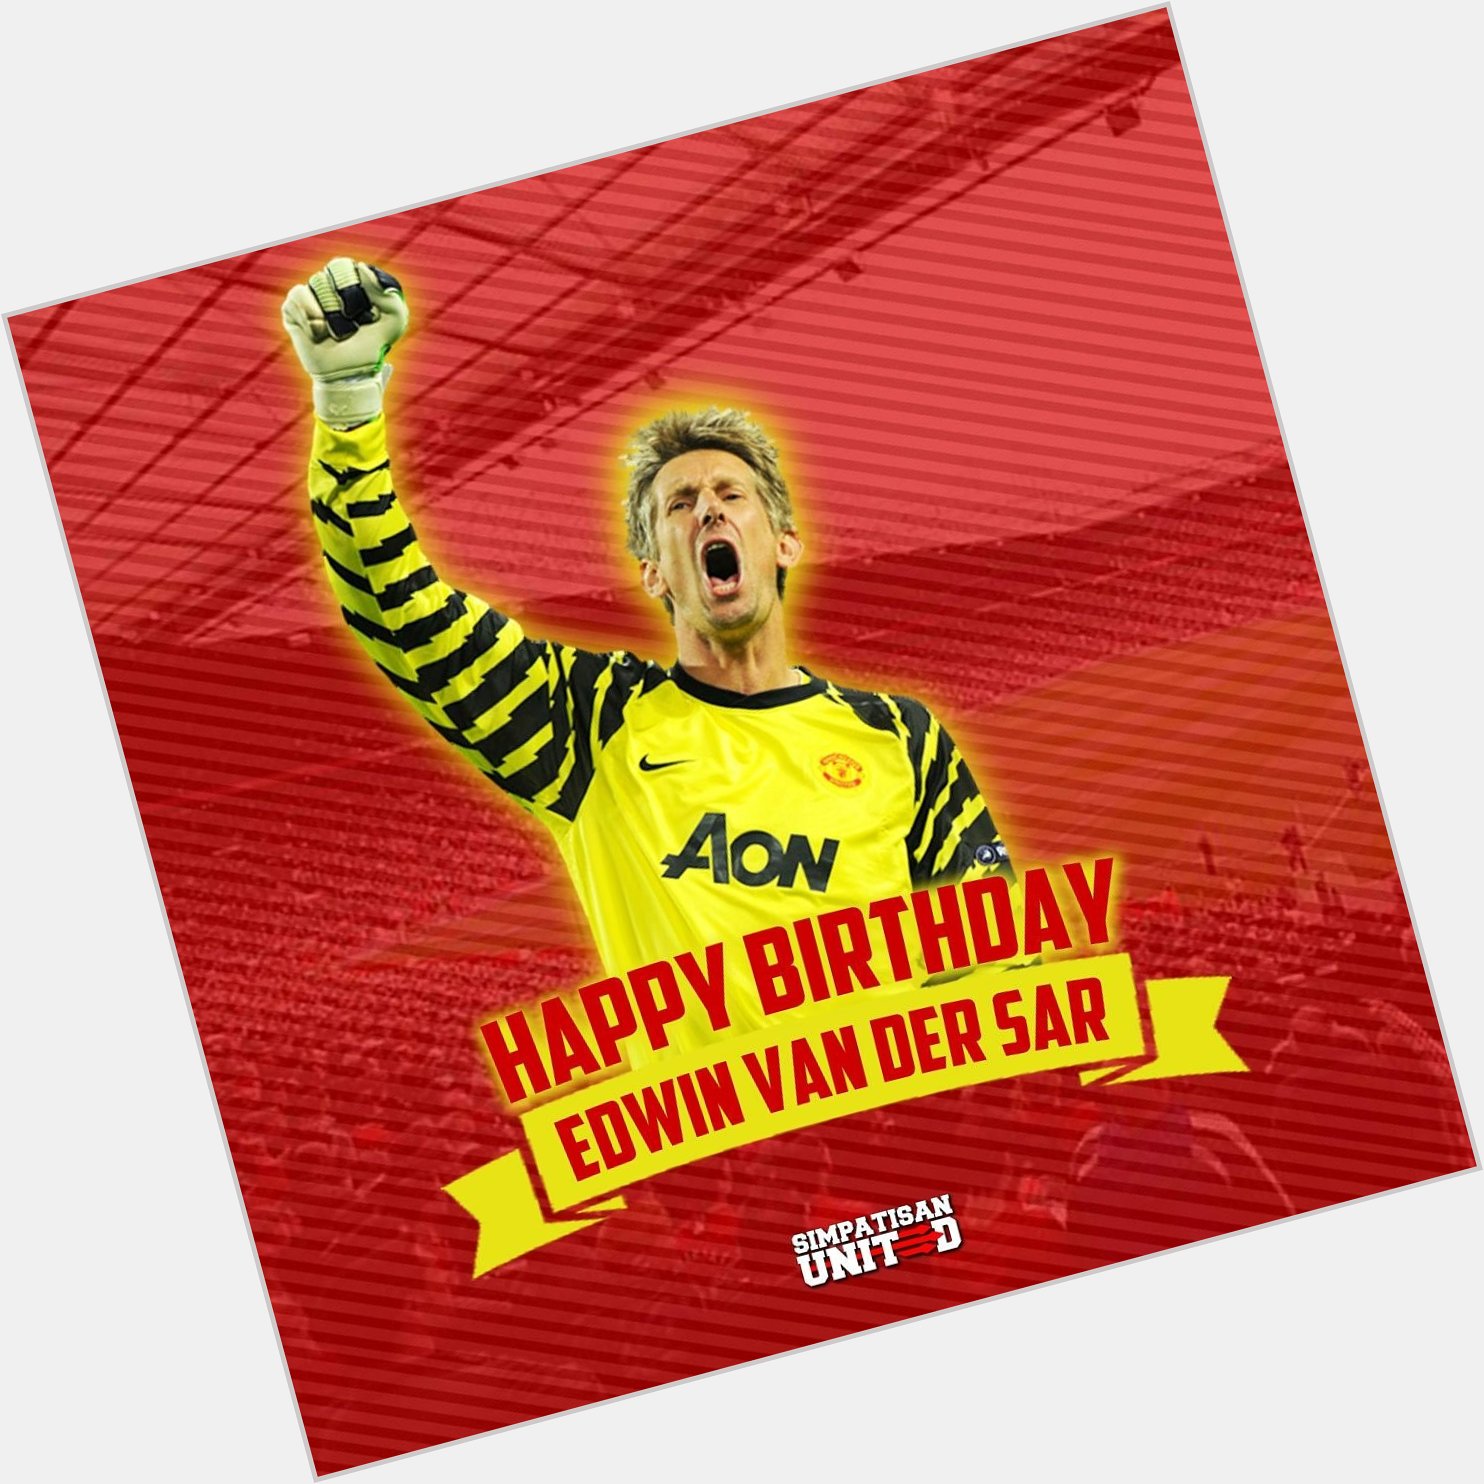 Happy Birthday Best Goalkeeper, Edwin Van Der Sar!
.   